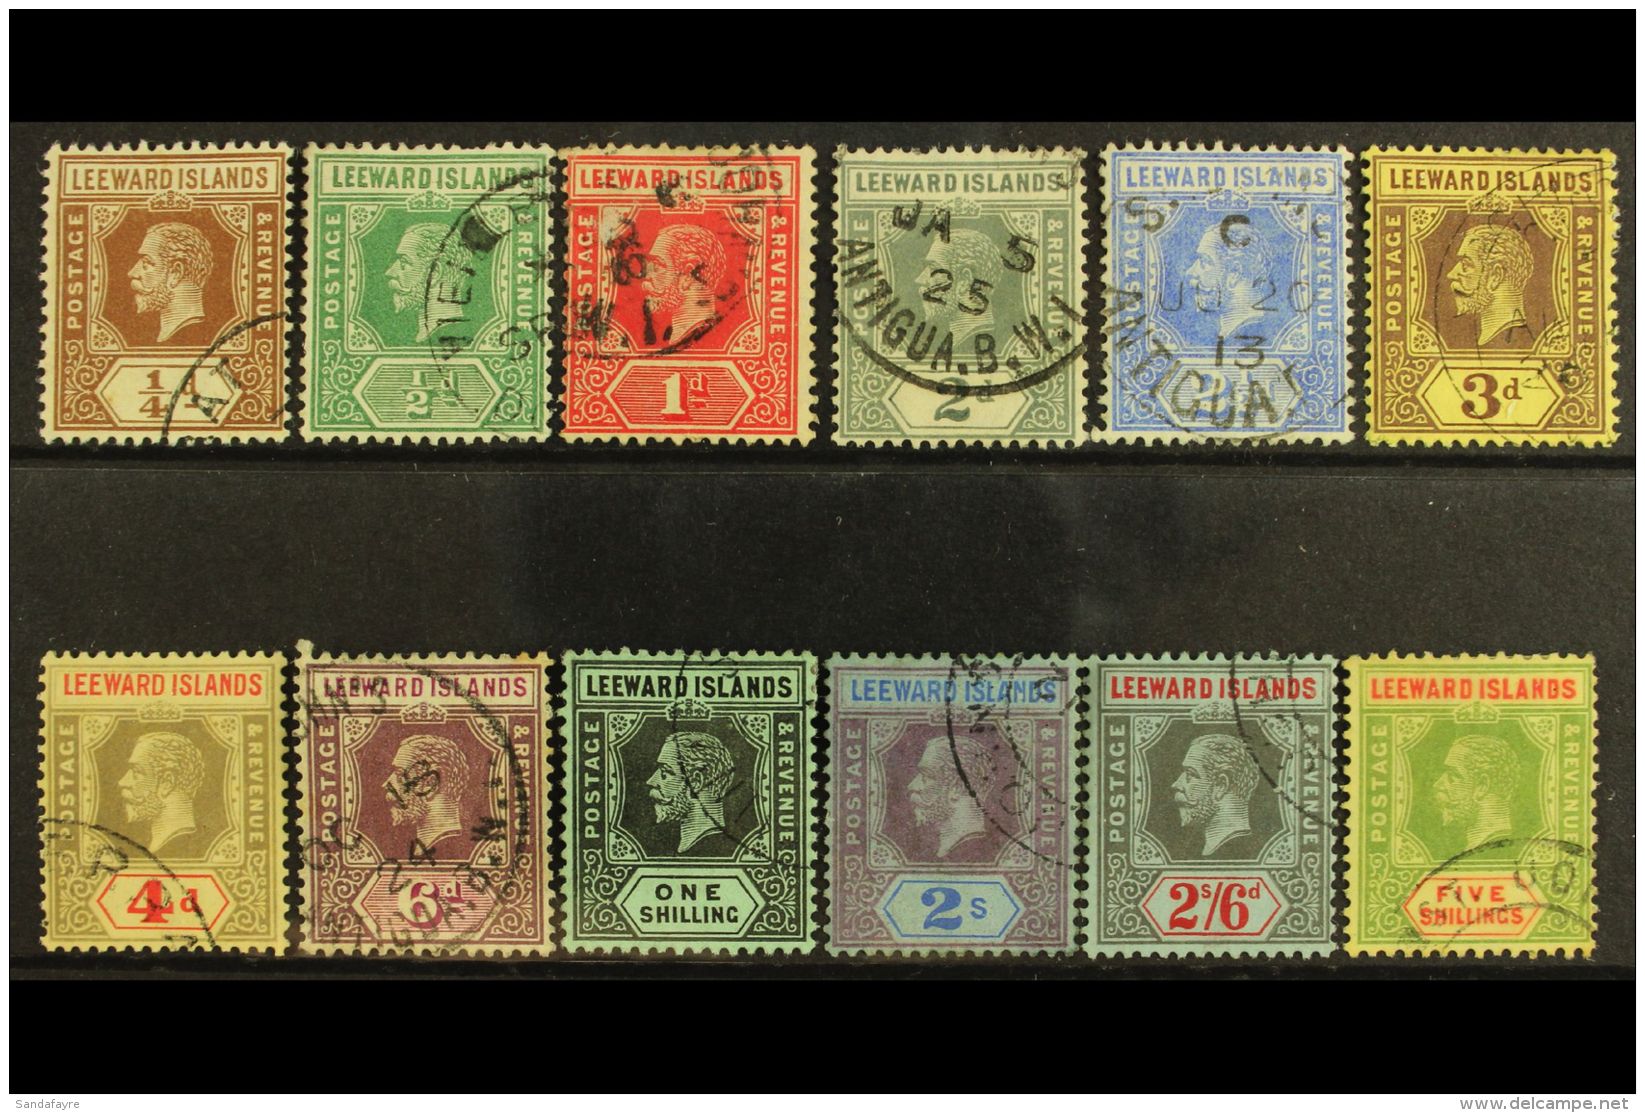 1912-22 (wmk Mult Crown CA) Definitives Complete Set, SG 46/57b, Fine Used. (12 Stamps) For More Images, Please... - Leeward  Islands